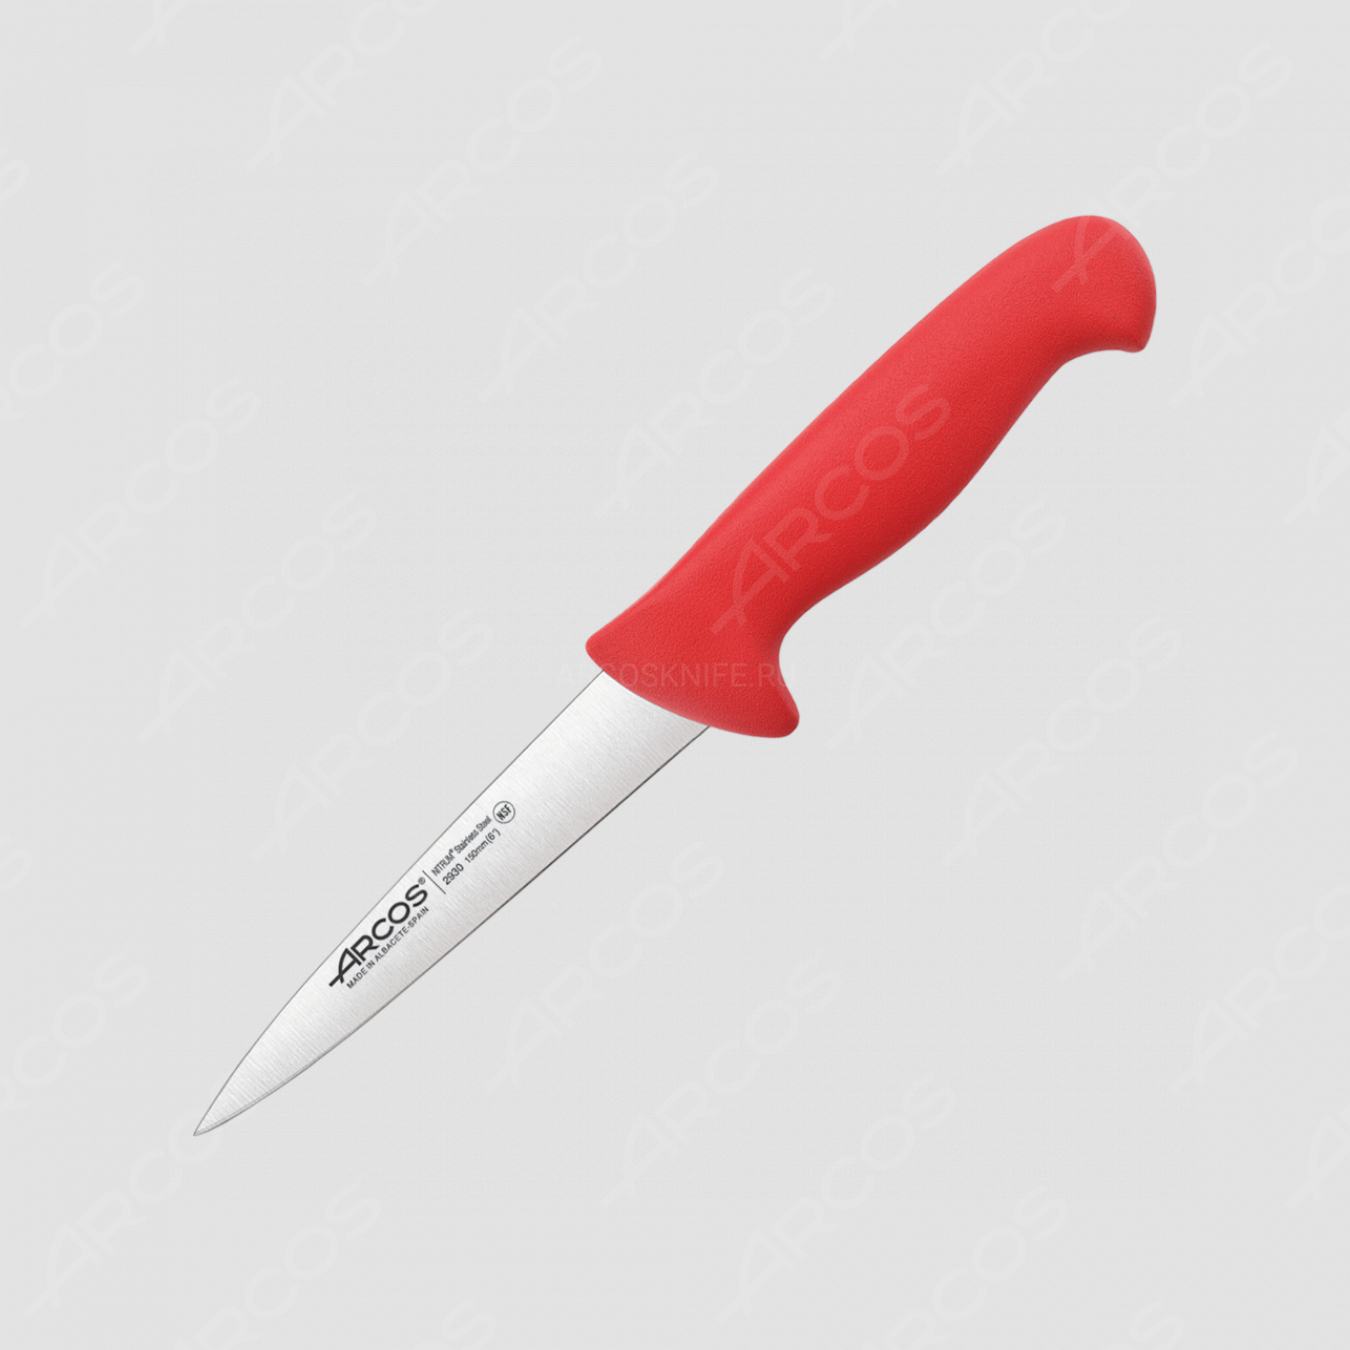 Нож кухонный для разделки мяса 15 см, рукоять - красная, серия 2900, ARCOS, Испания